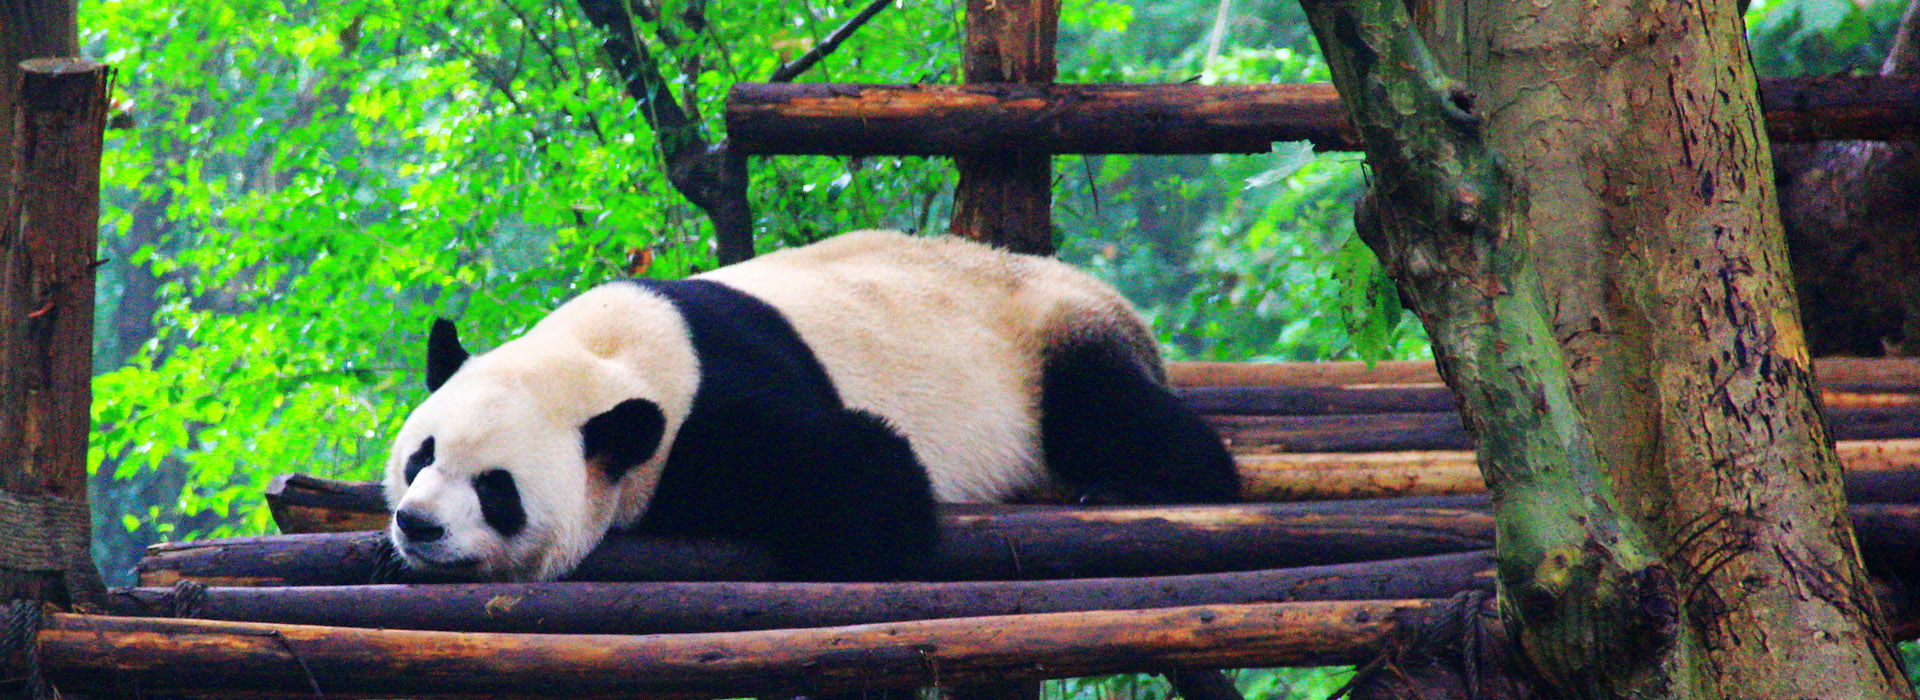 China Highlights With Panda Visit